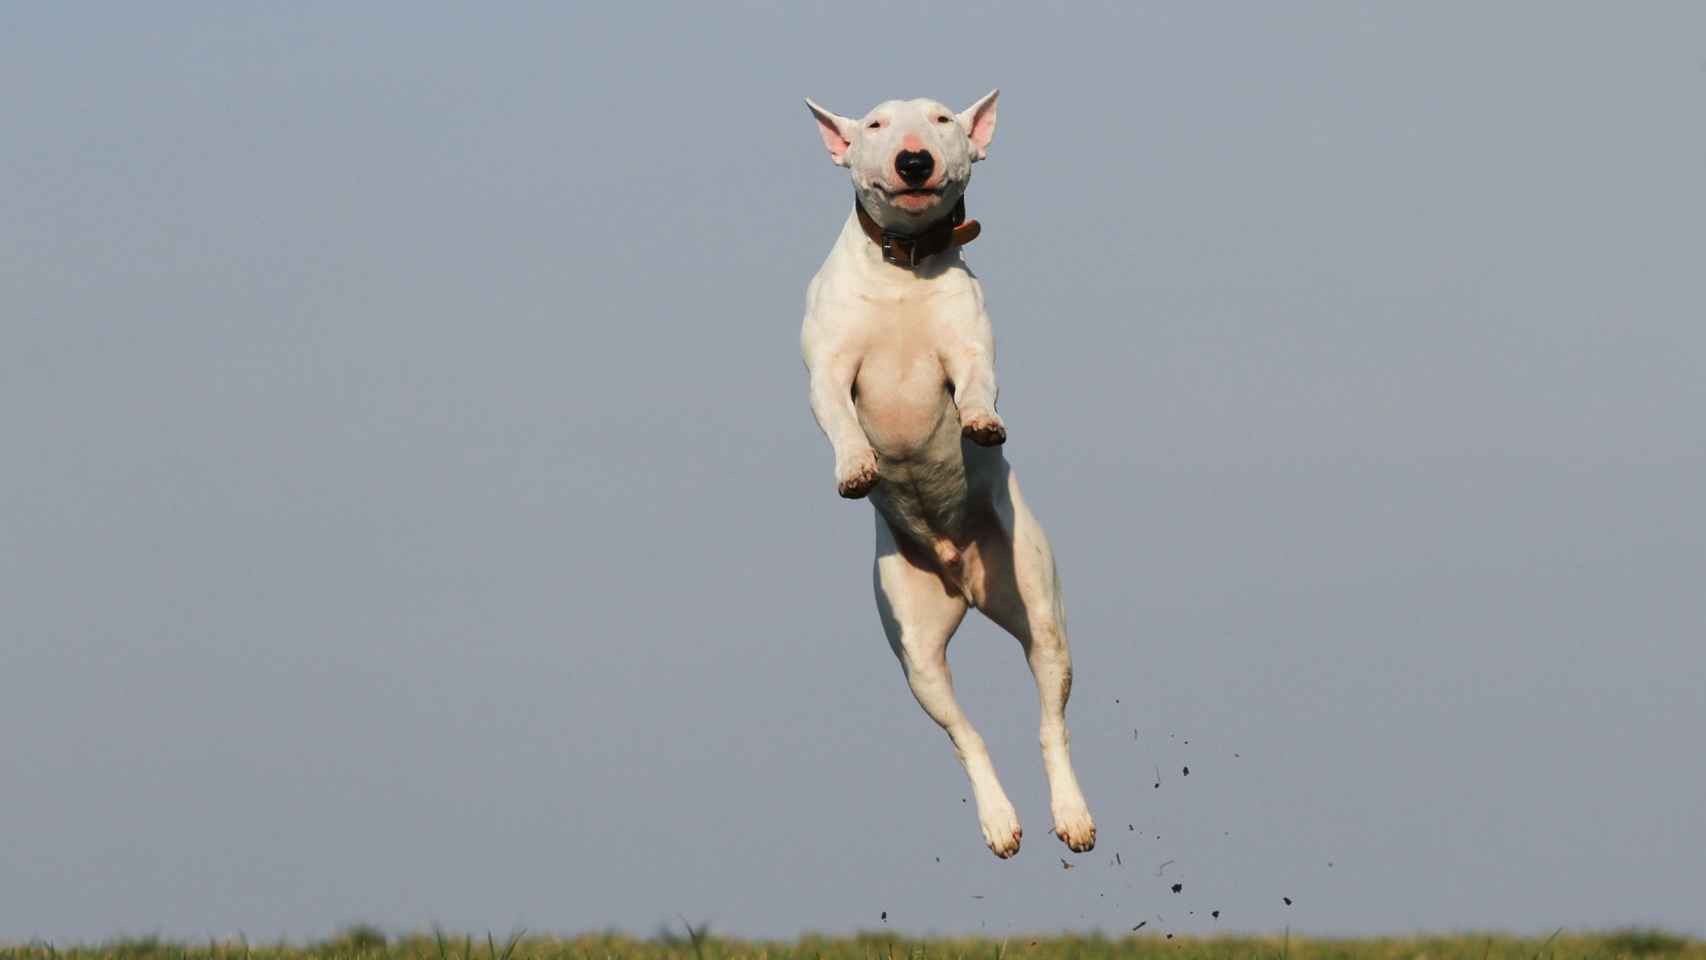 Un perro saltando en el aire libre